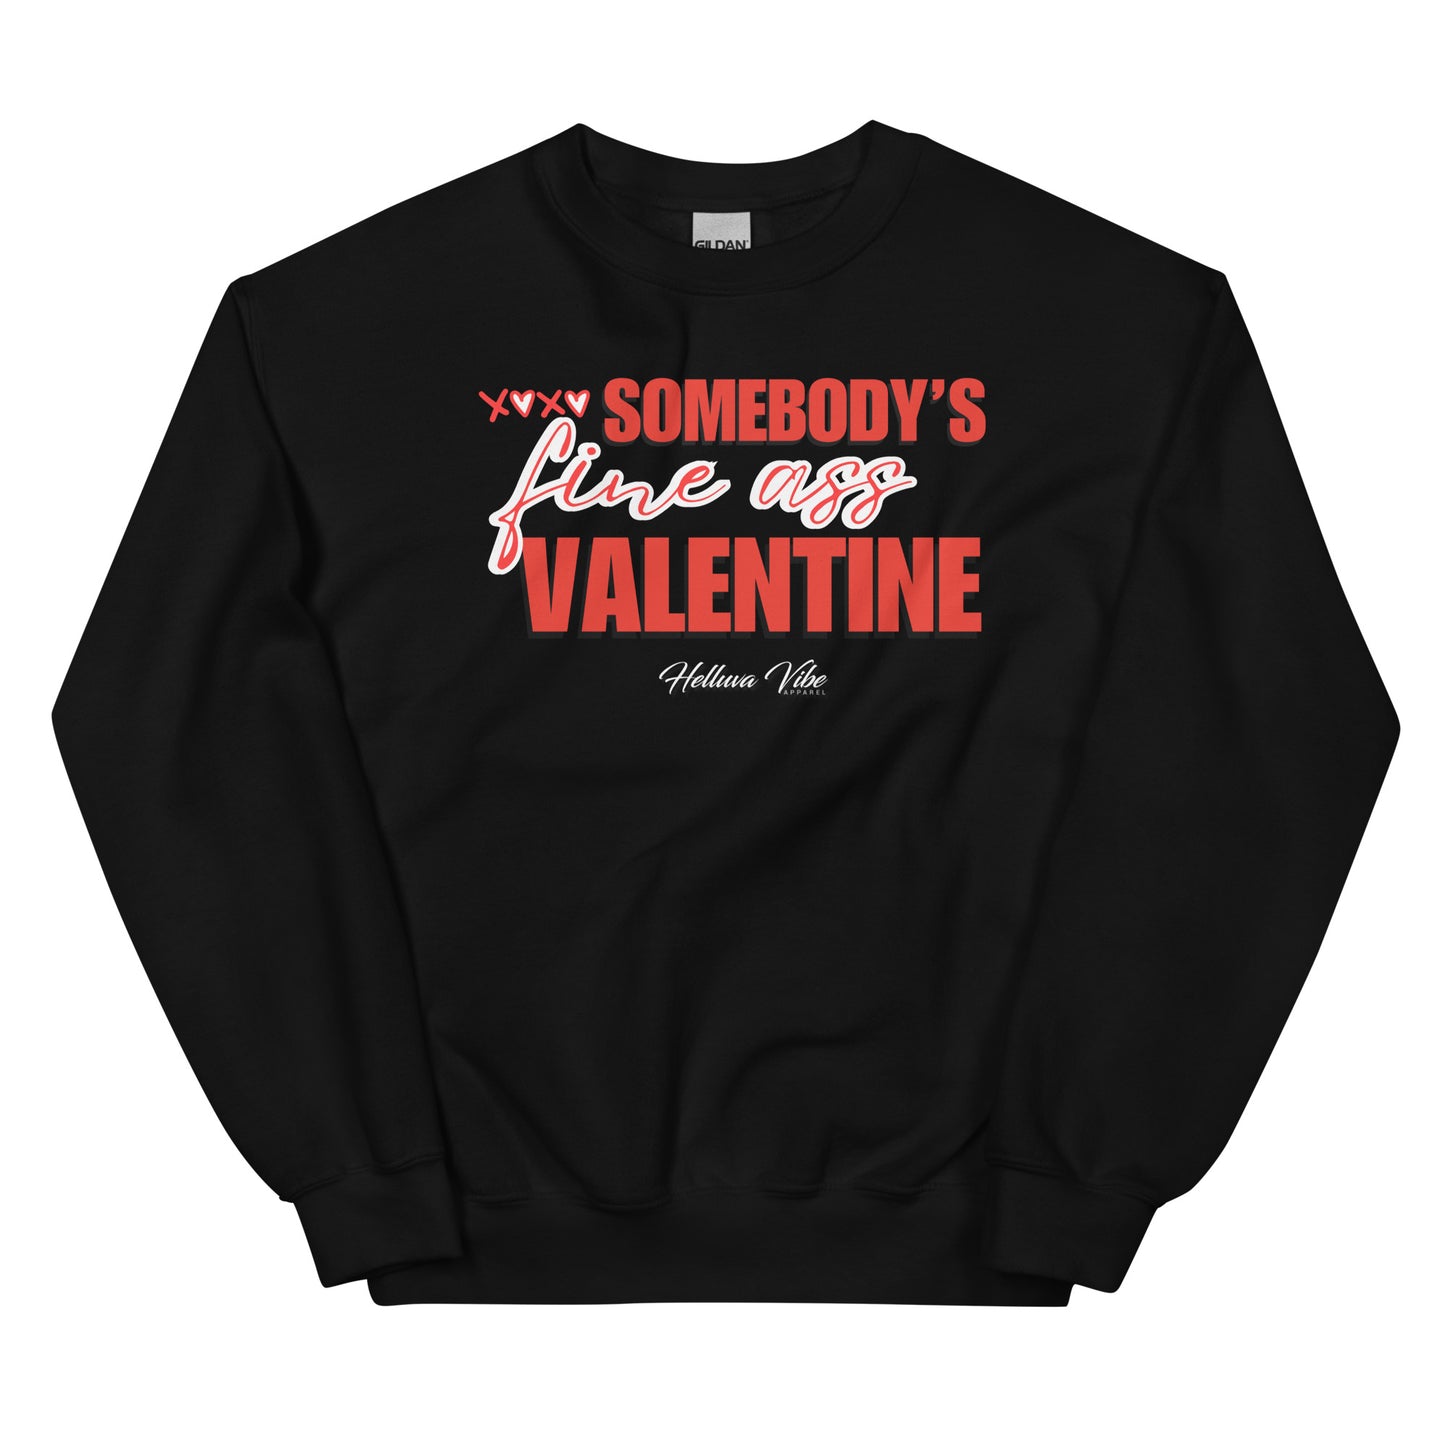 Somebody's Fine Ass Valentine Sweatshirt